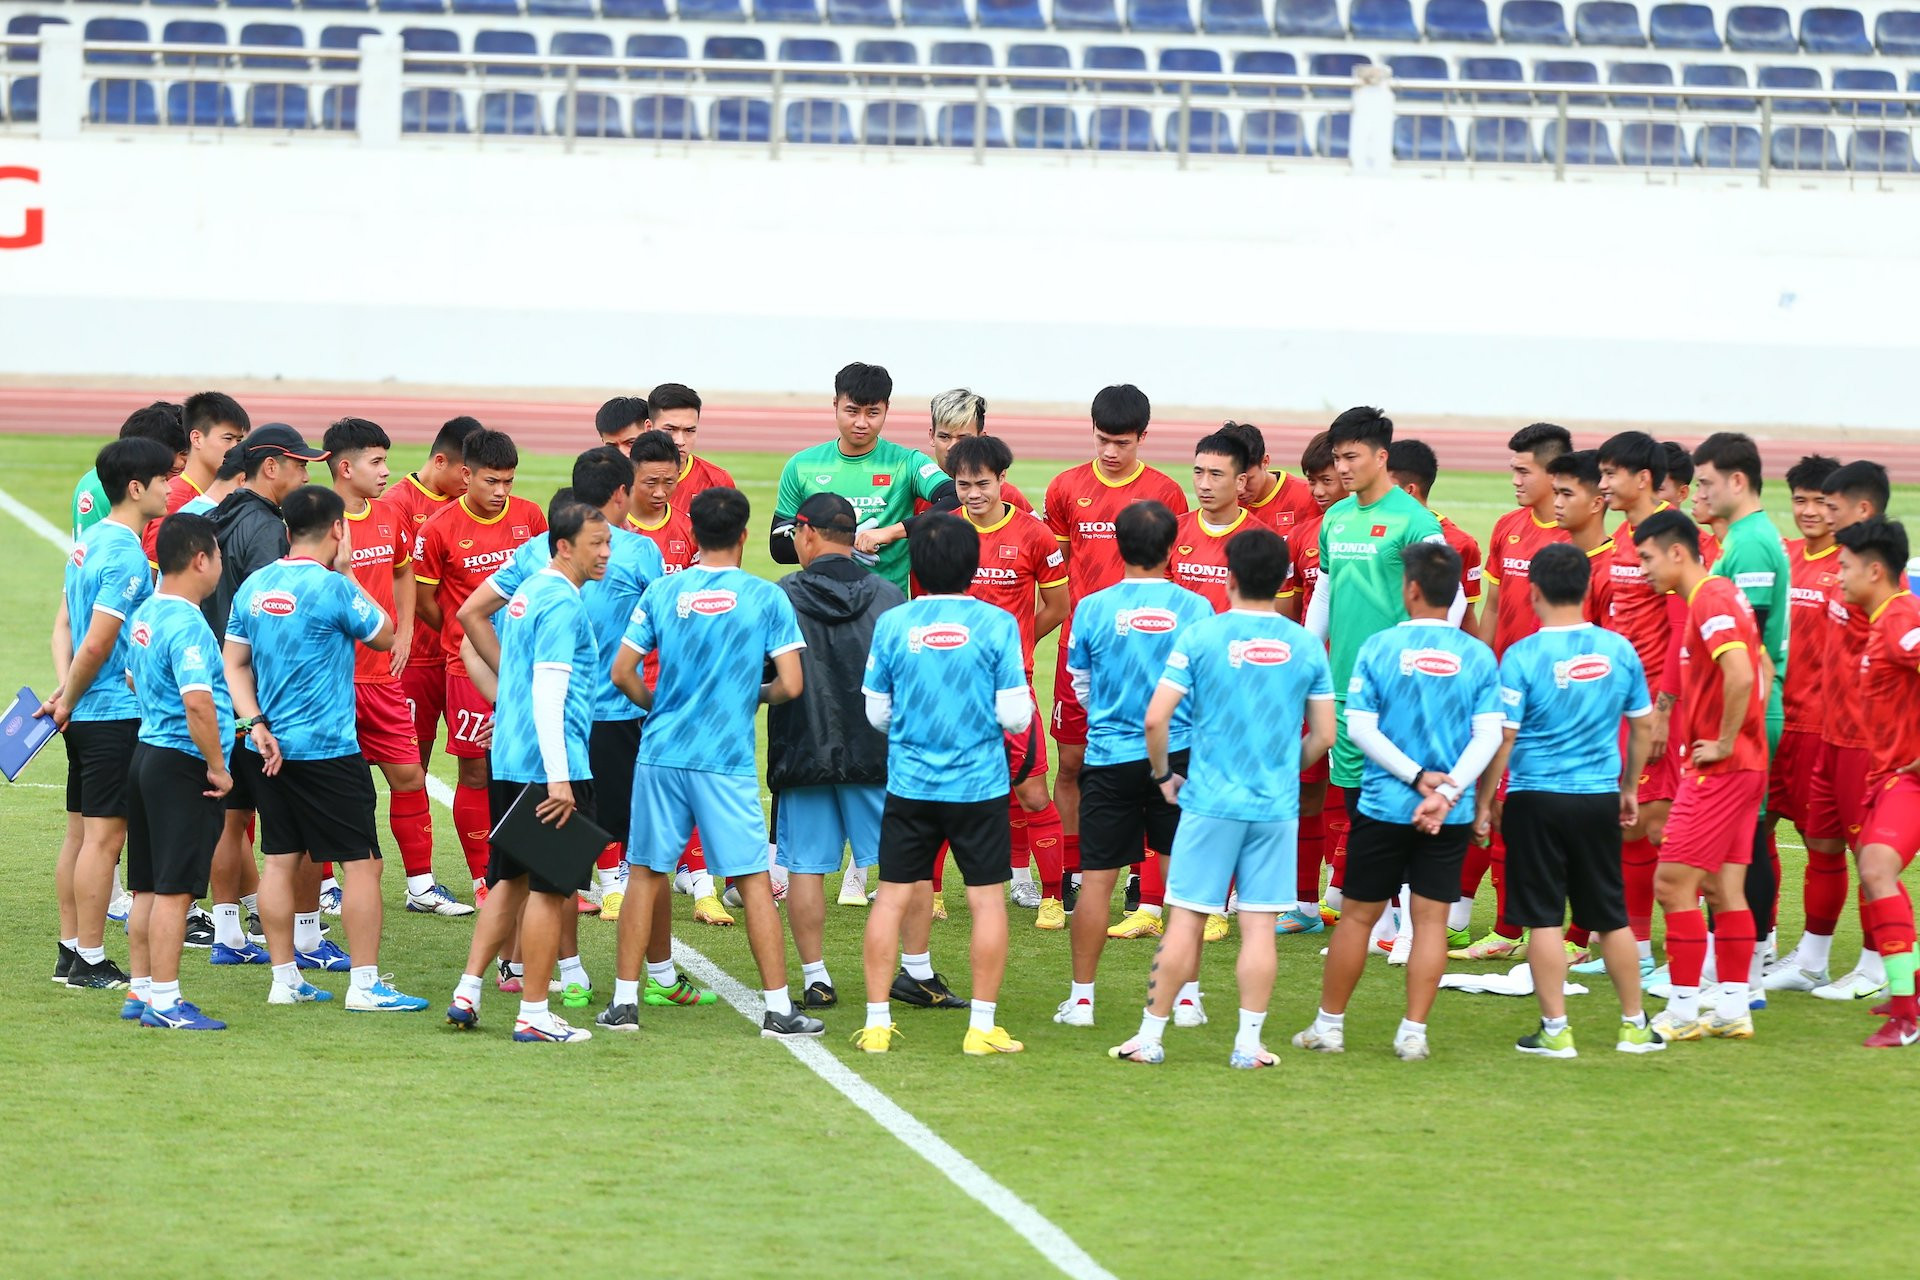 Trước khi bước vào trận đấu, HLV Park Hang Seo đã triển khai cuộc họp nhanh với toàn đội sau khi trở về từ Hàn Quốc